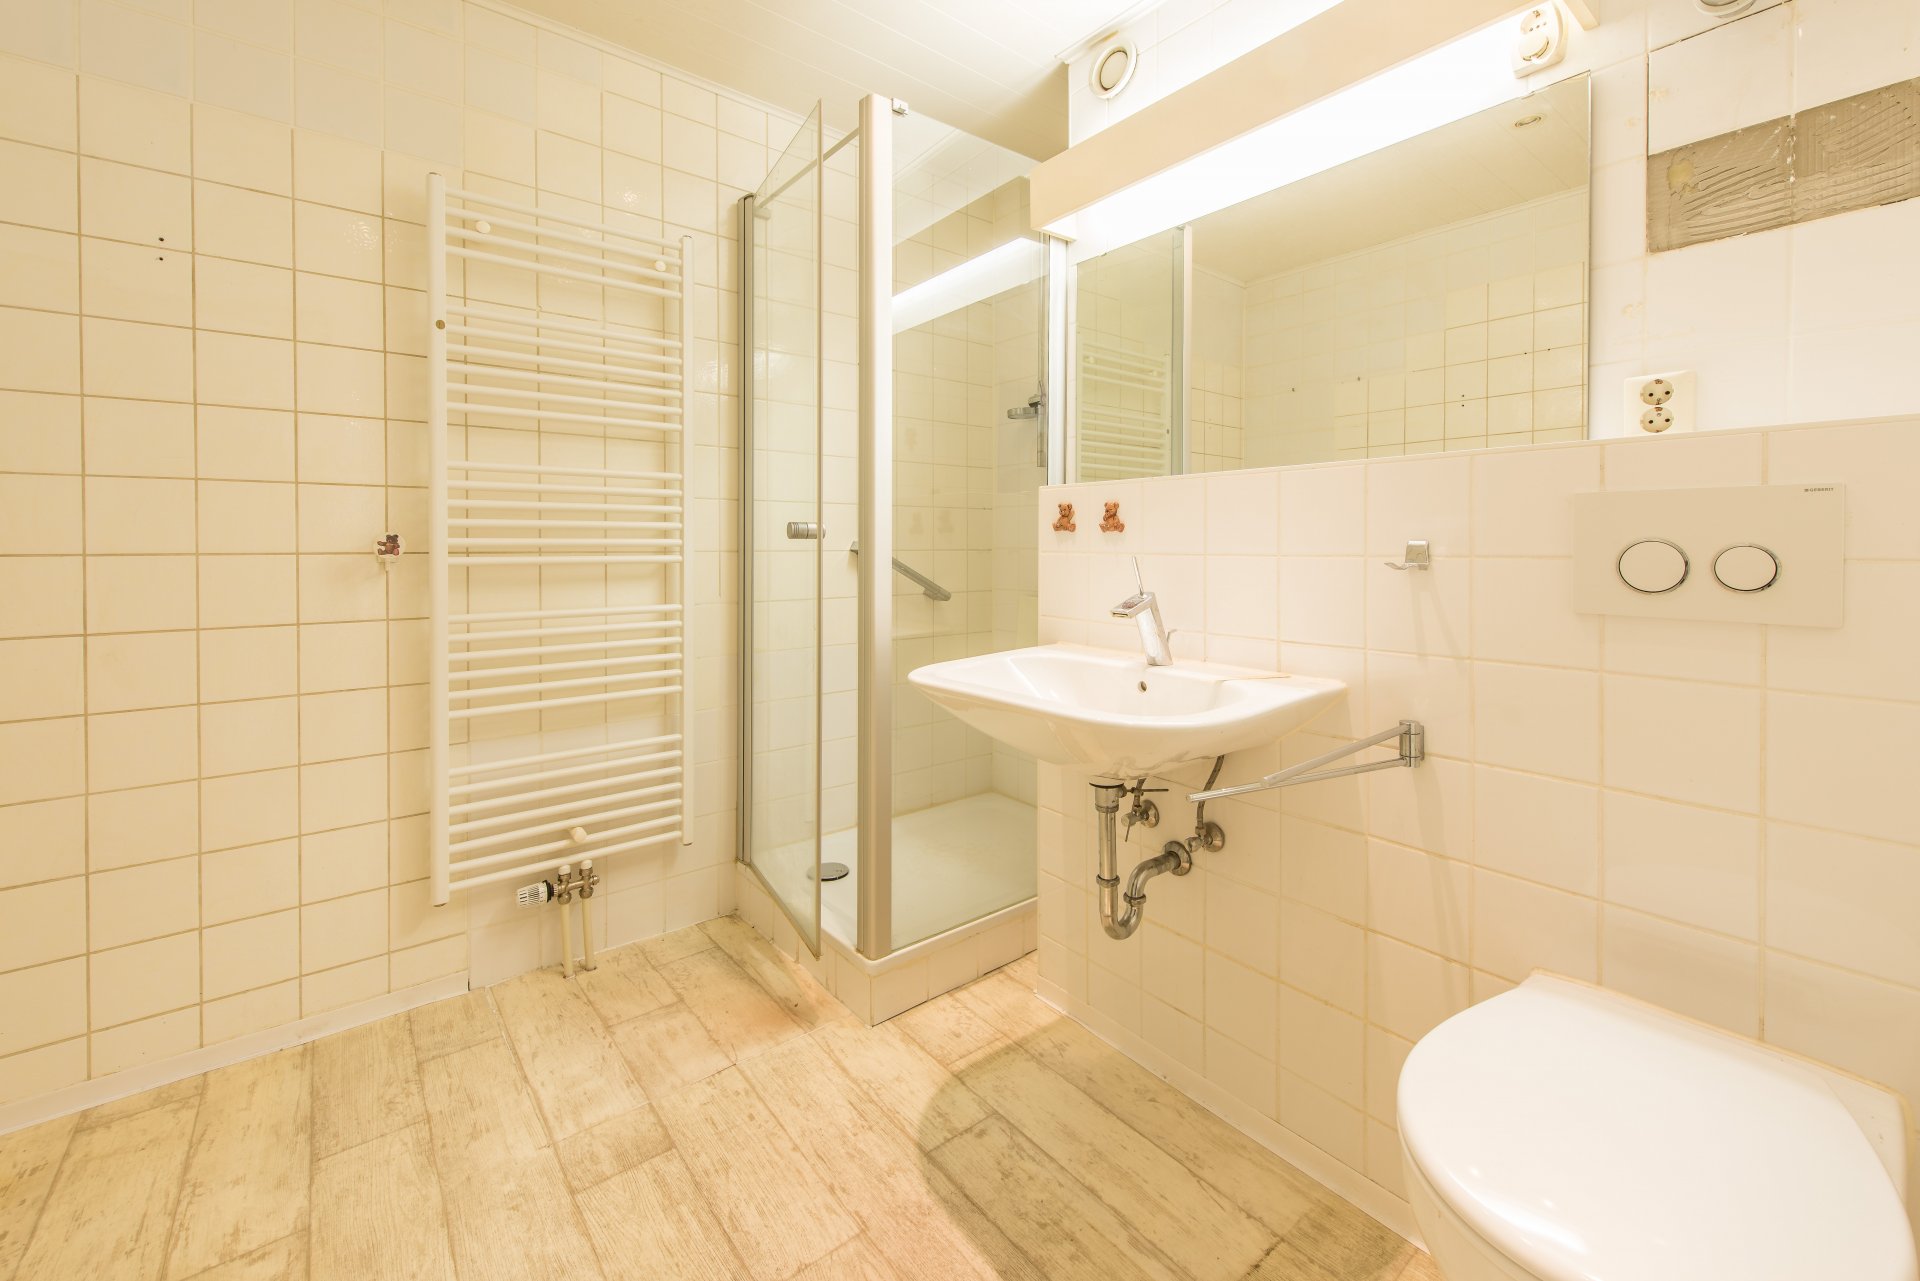 Das Bad wurde schon mal renoviert - Oliver Reifferscheid - Immobilienmakler Darmstadt